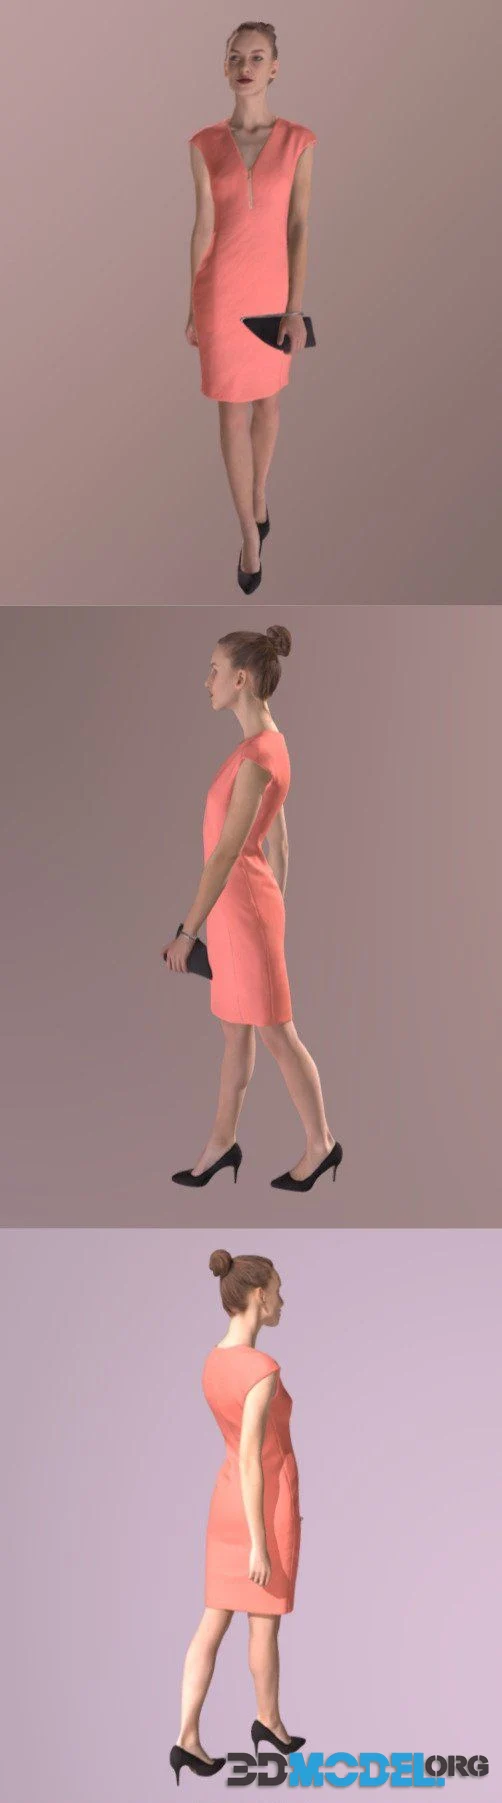 Elegant Walking Woman Beauty Dress (PBR)